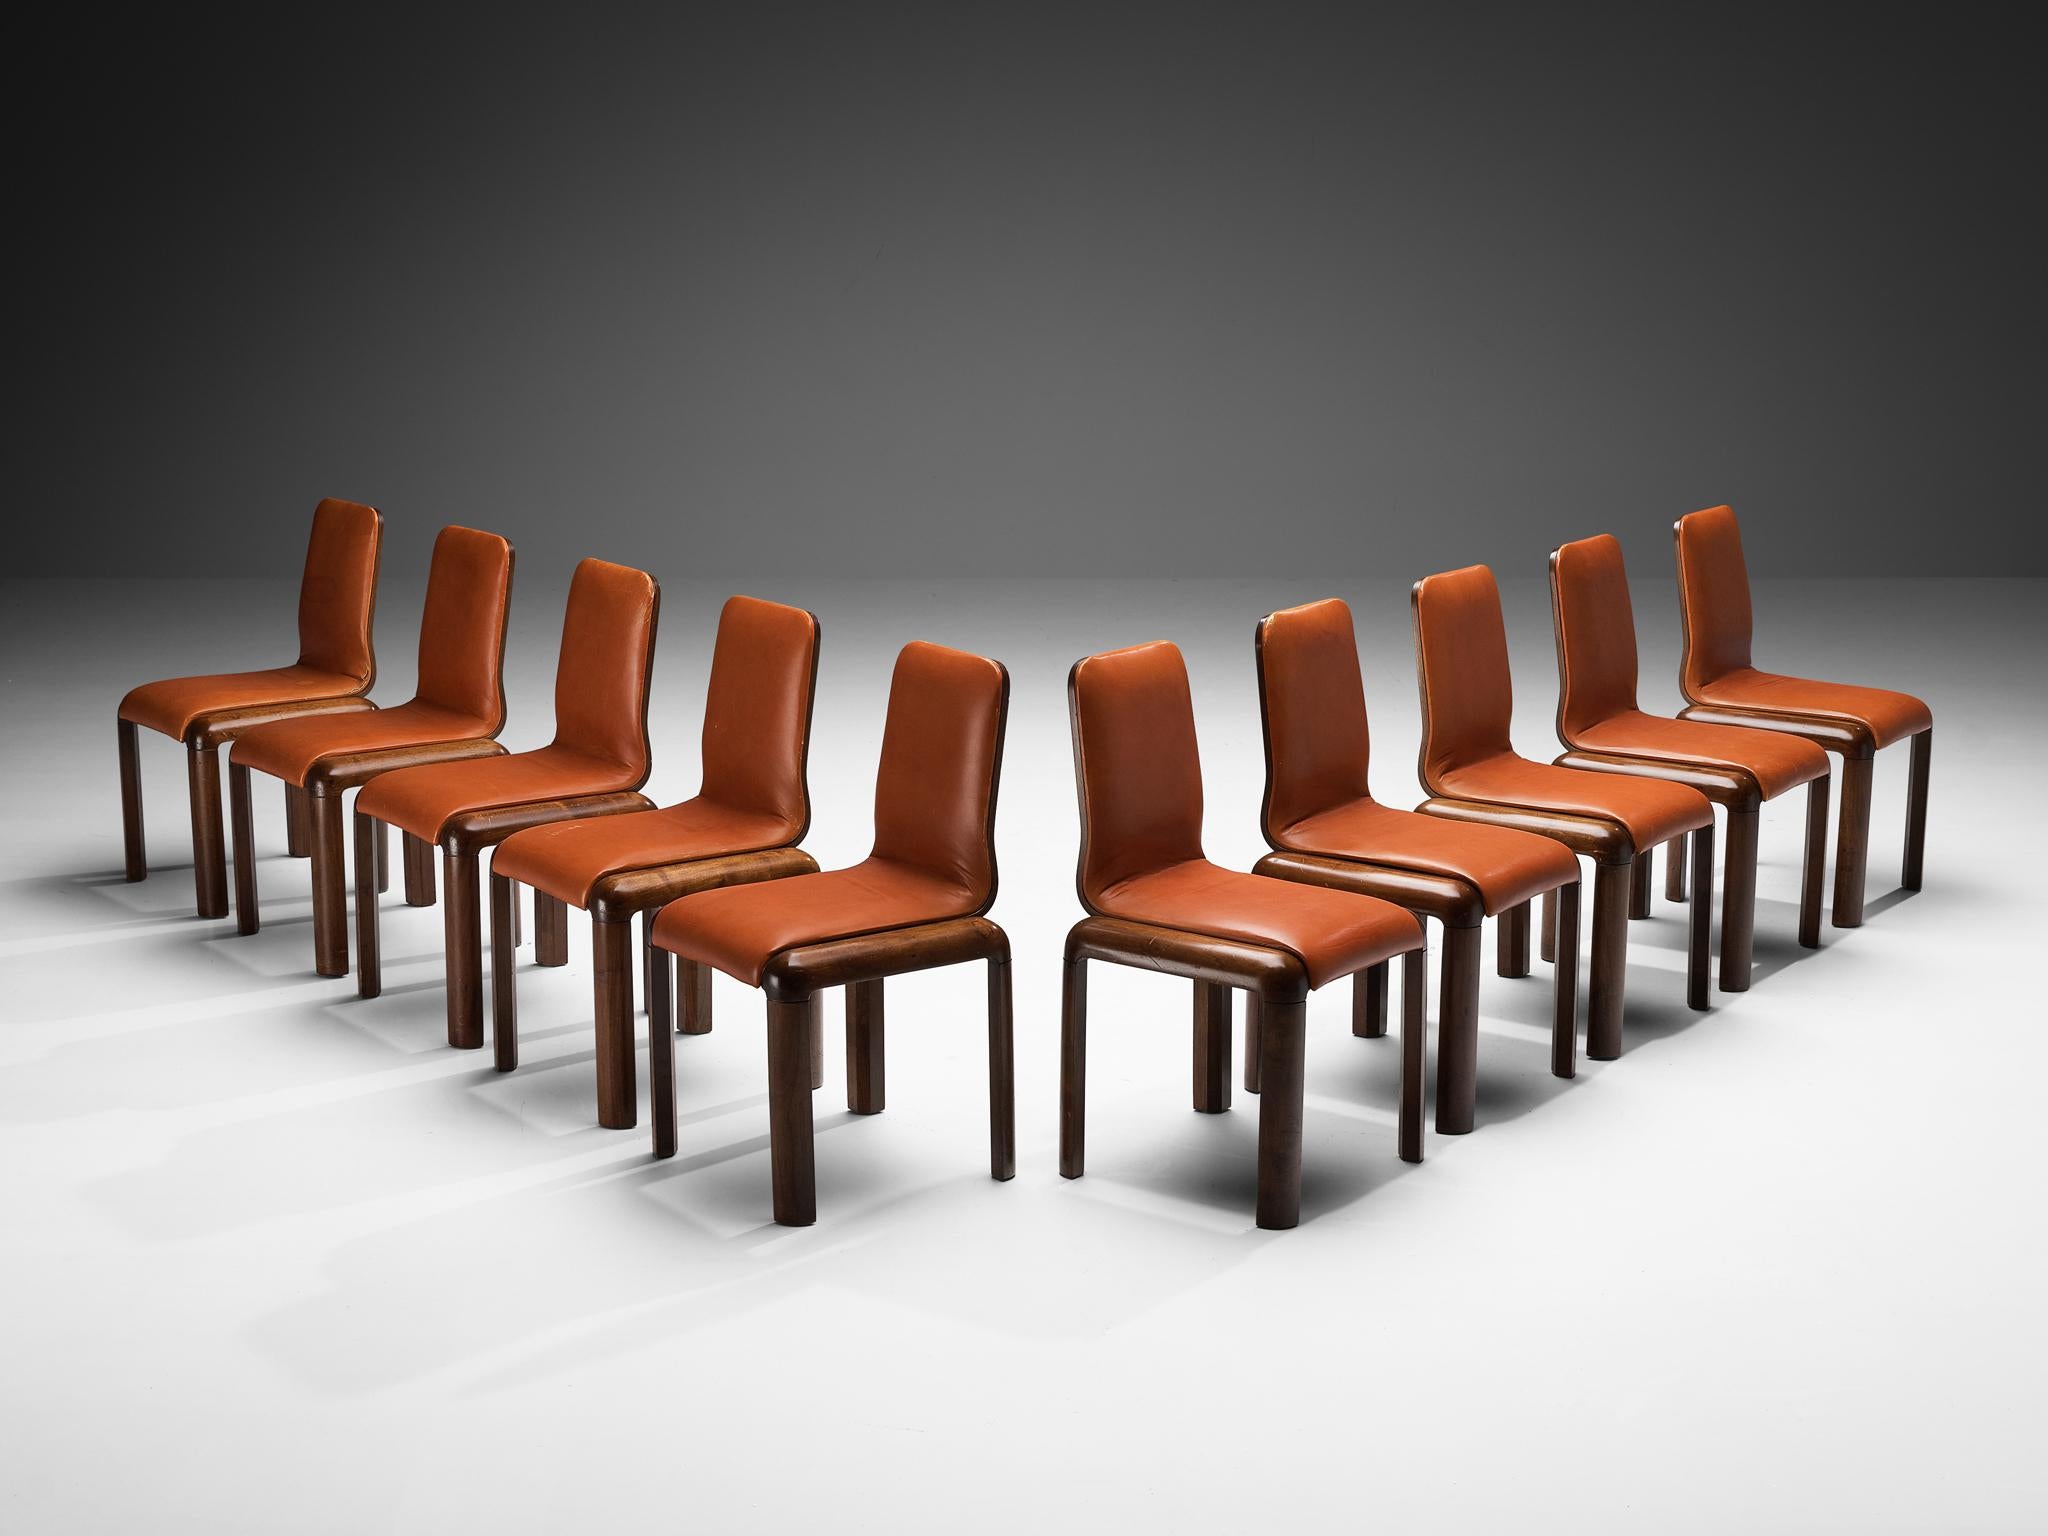 Satz von zehn Esszimmerstühlen, Leder, Nussbaum, Nussbaumsperrholz, Italien, 1970er Jahre

Wunderschön konstruierte Esszimmerstühle mit stromlinienförmigem Design und offener Konstruktion. Die Rückenlehne weist eine sanfte Kurve auf, die besonders